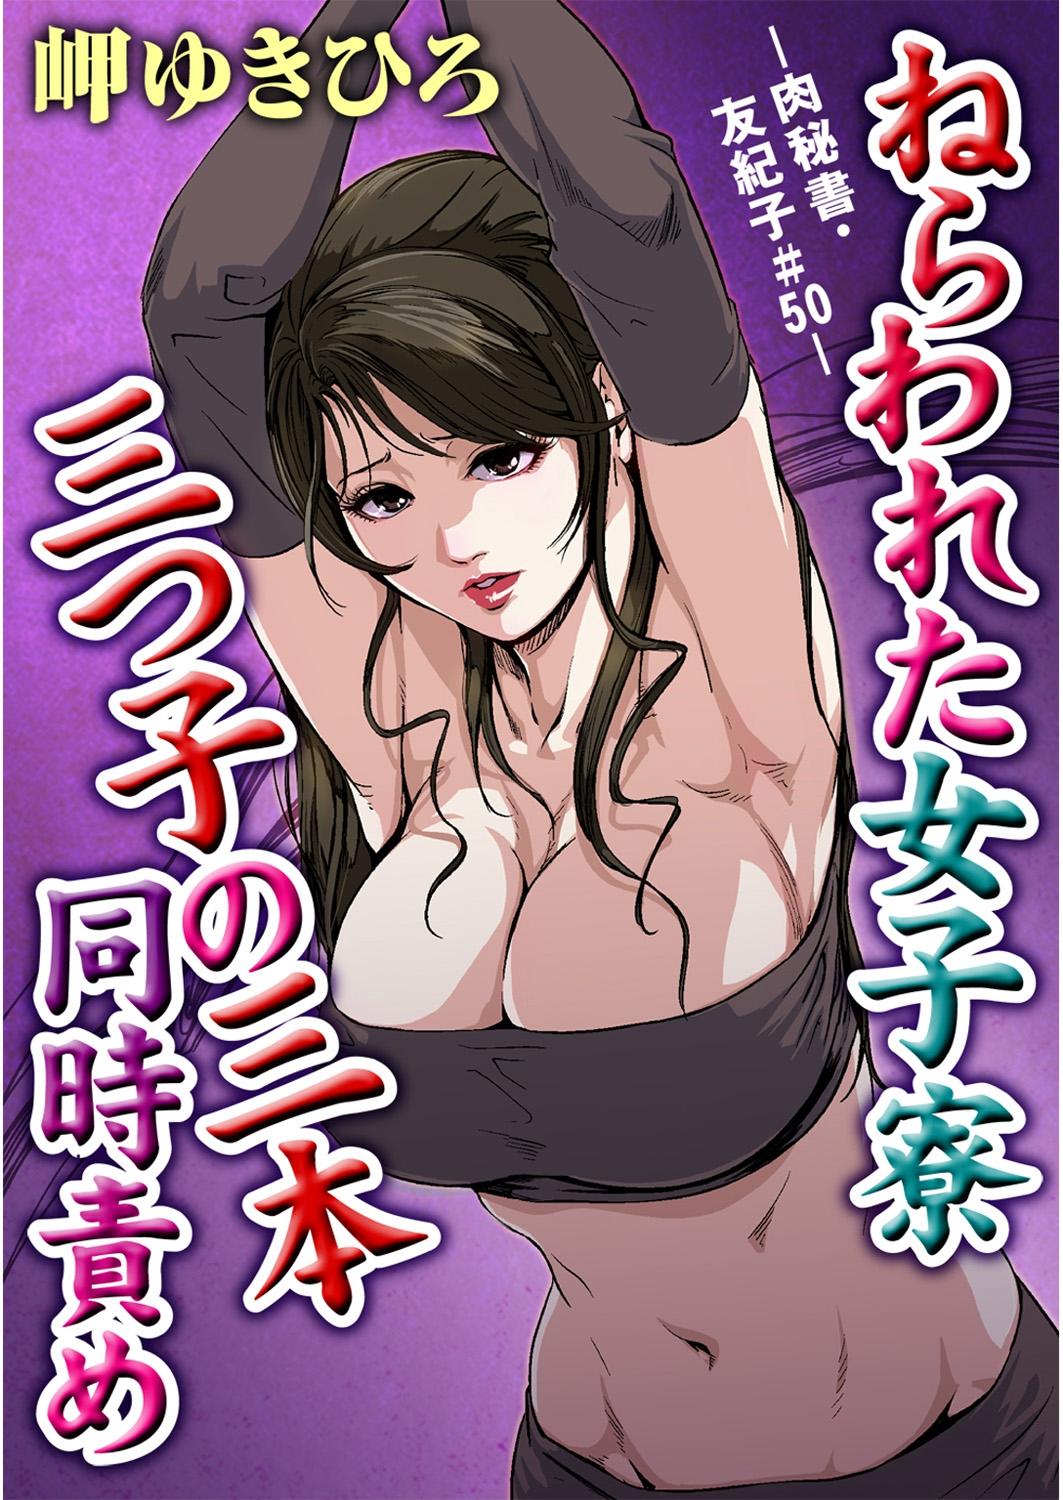 Nikuhisyo Yukiko 13 2